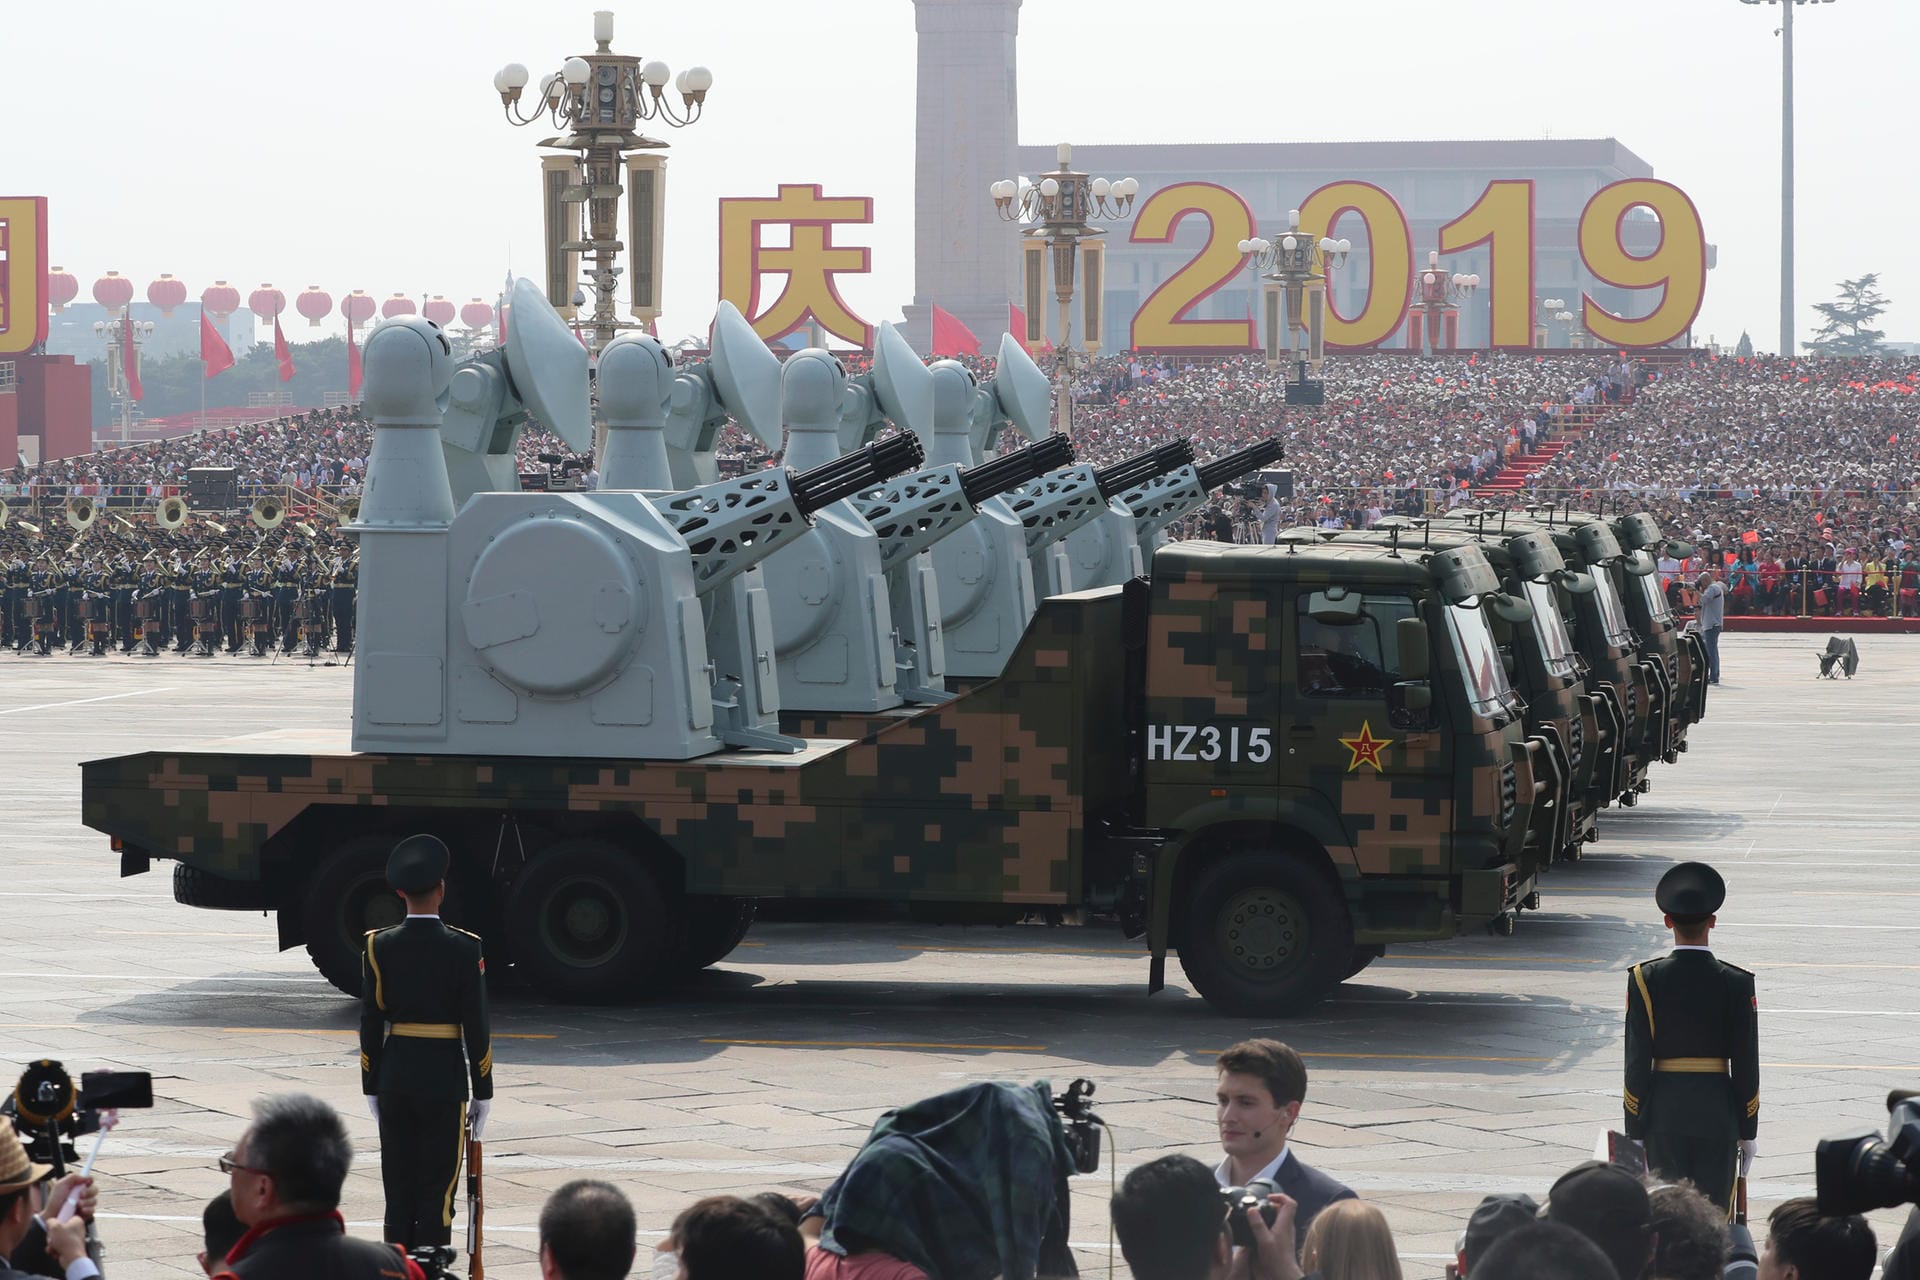 Die präsentierte Ausrüstung sei "komplett selbst produziert", sagte Generalmajor Cai Zhijun, Vizedirektor des Generalstabs. Es solle die "unabhängige Innovationsfähigkeit" der chinesischen Verteidigungsindustrie demonstrieren.